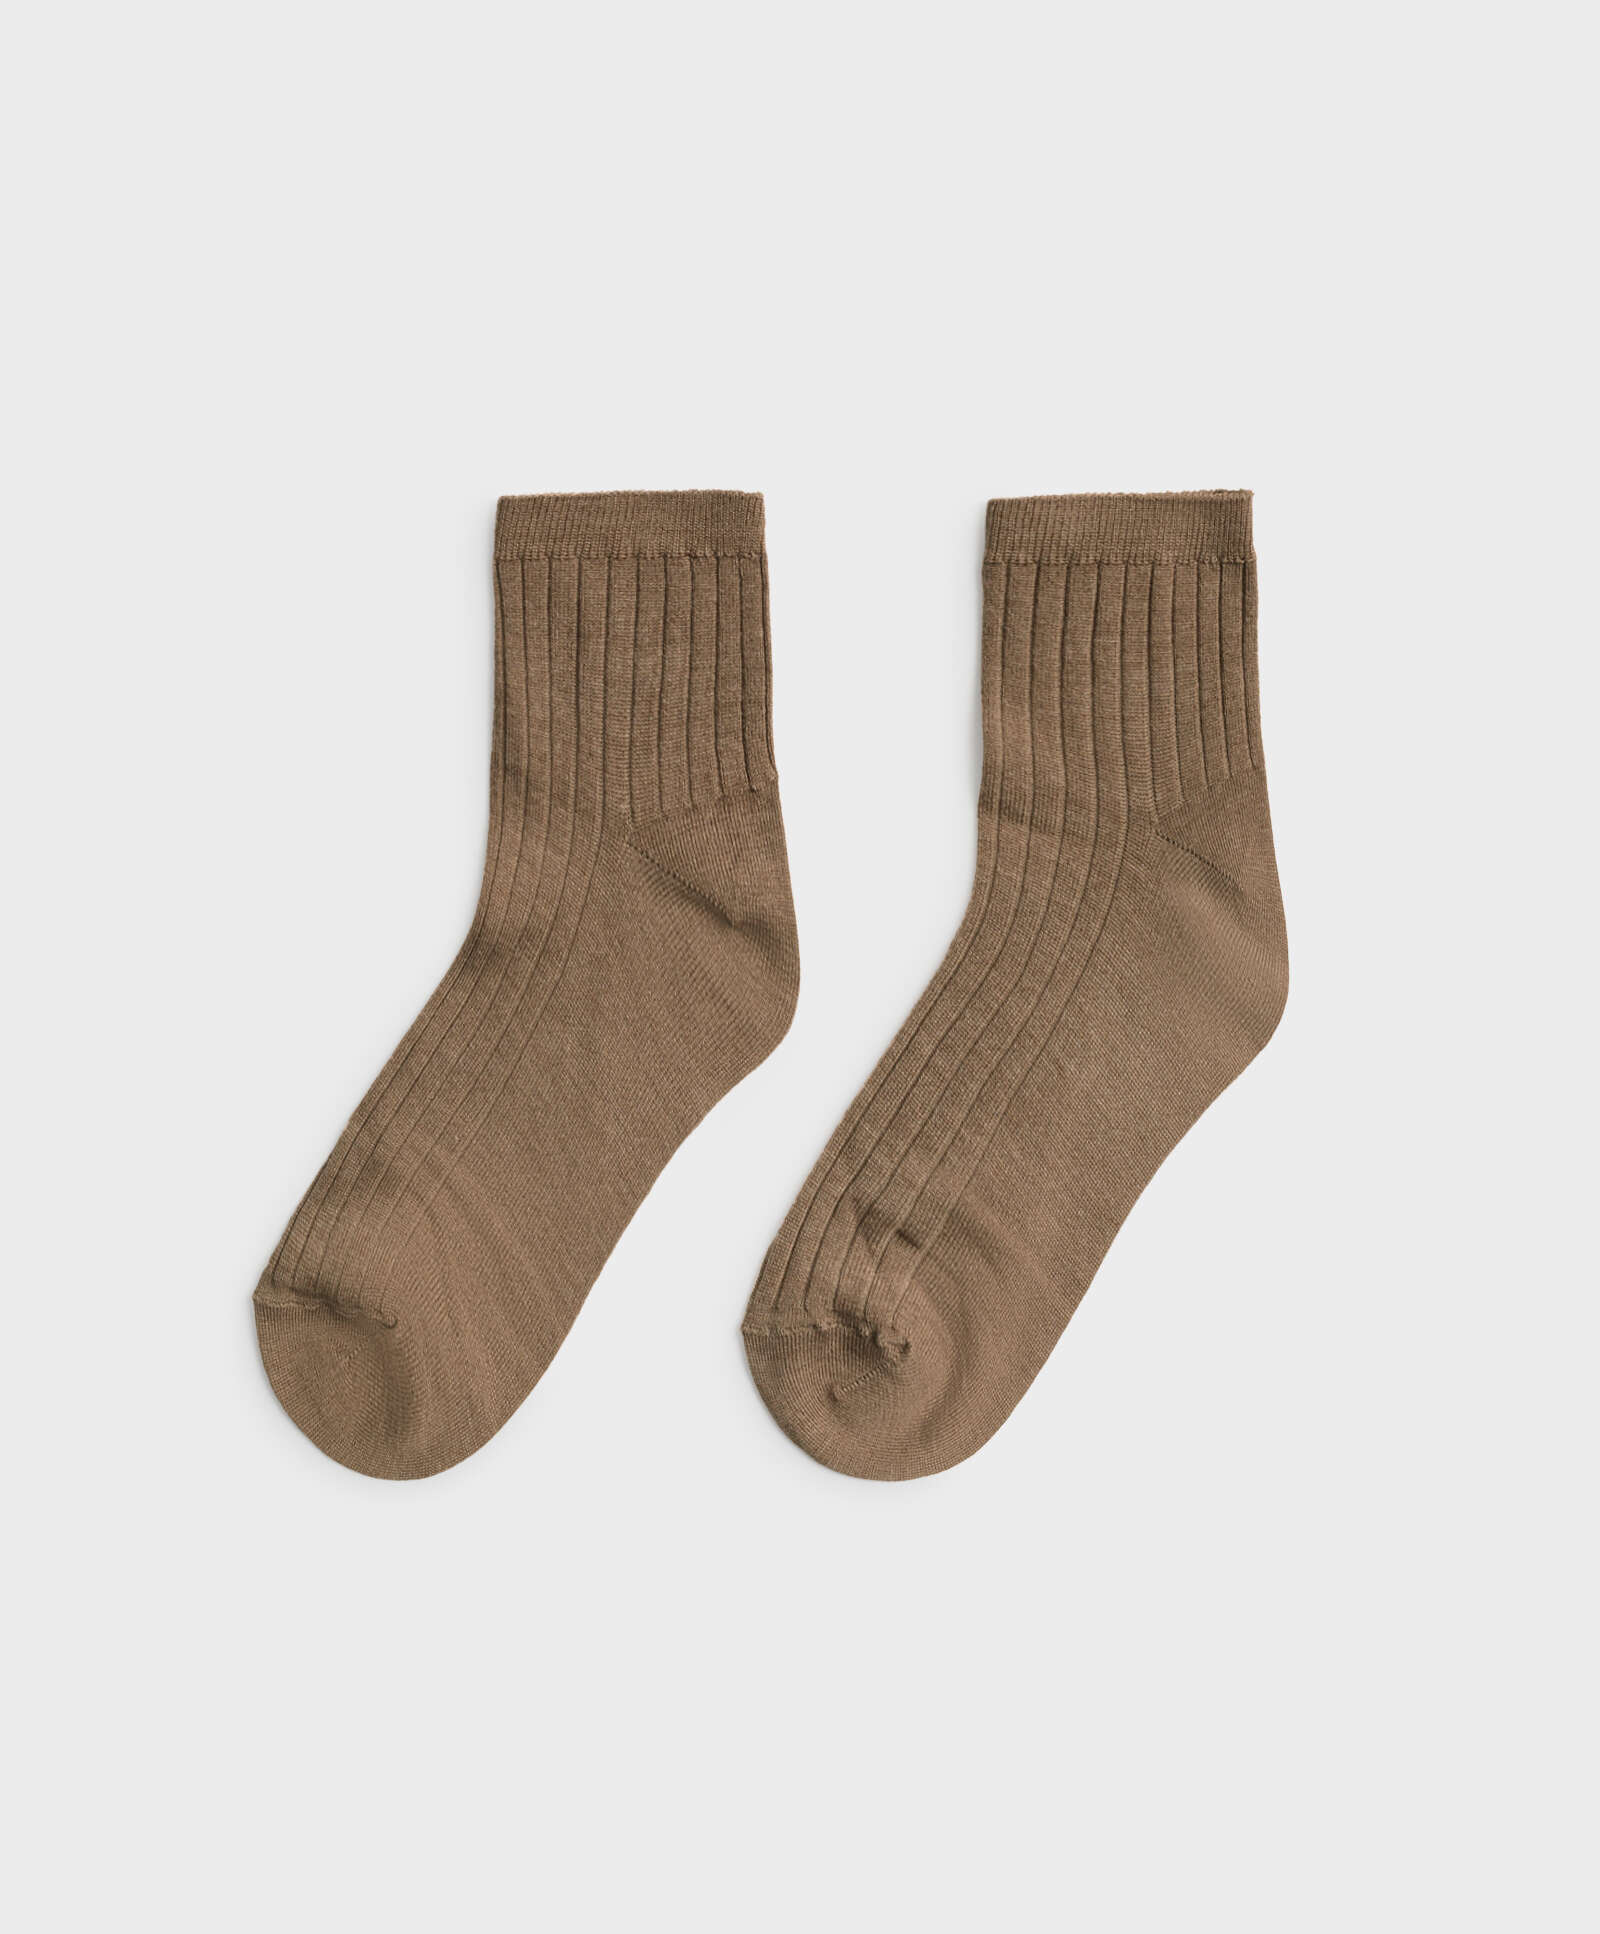 Χαμηλές κάλτσες από μετάξι